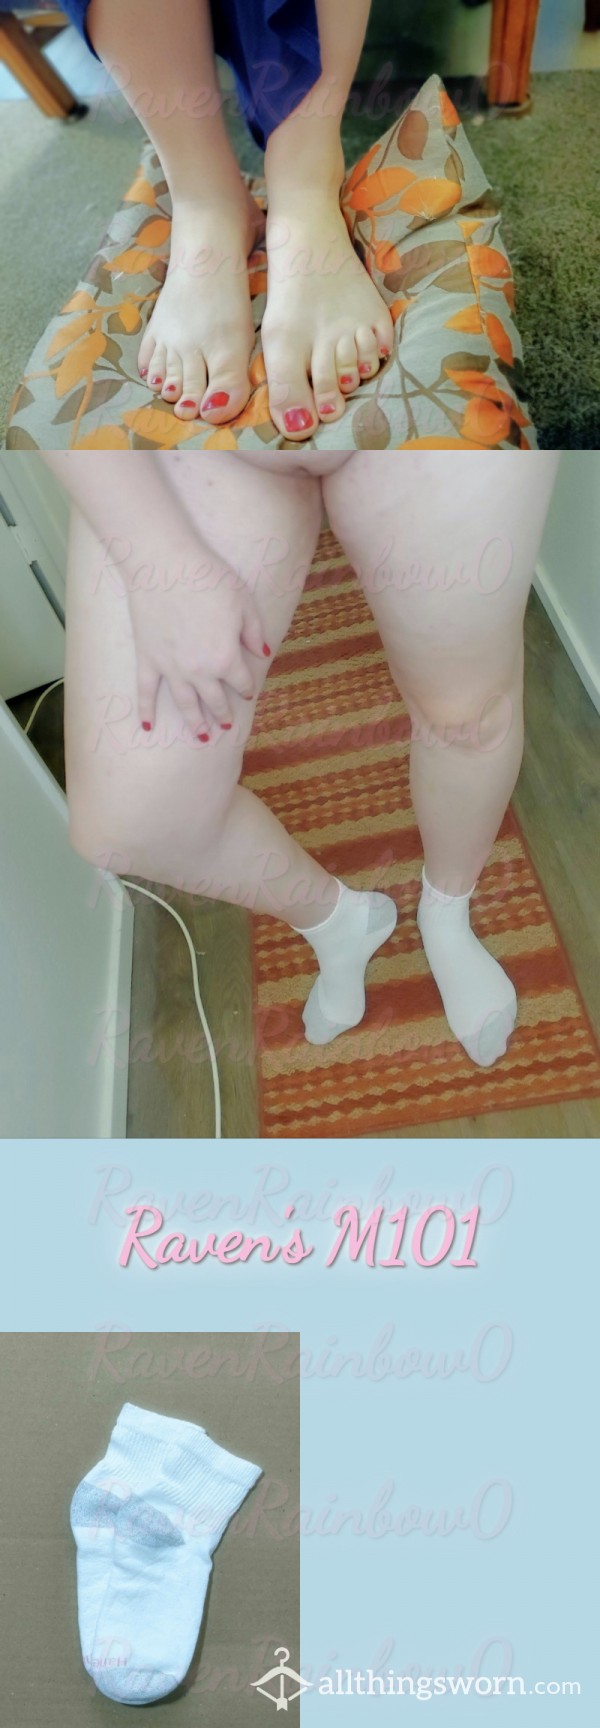 Classic White Ankle Socks (Pair) - Taste My Lovely Dutch Socks? [M101]